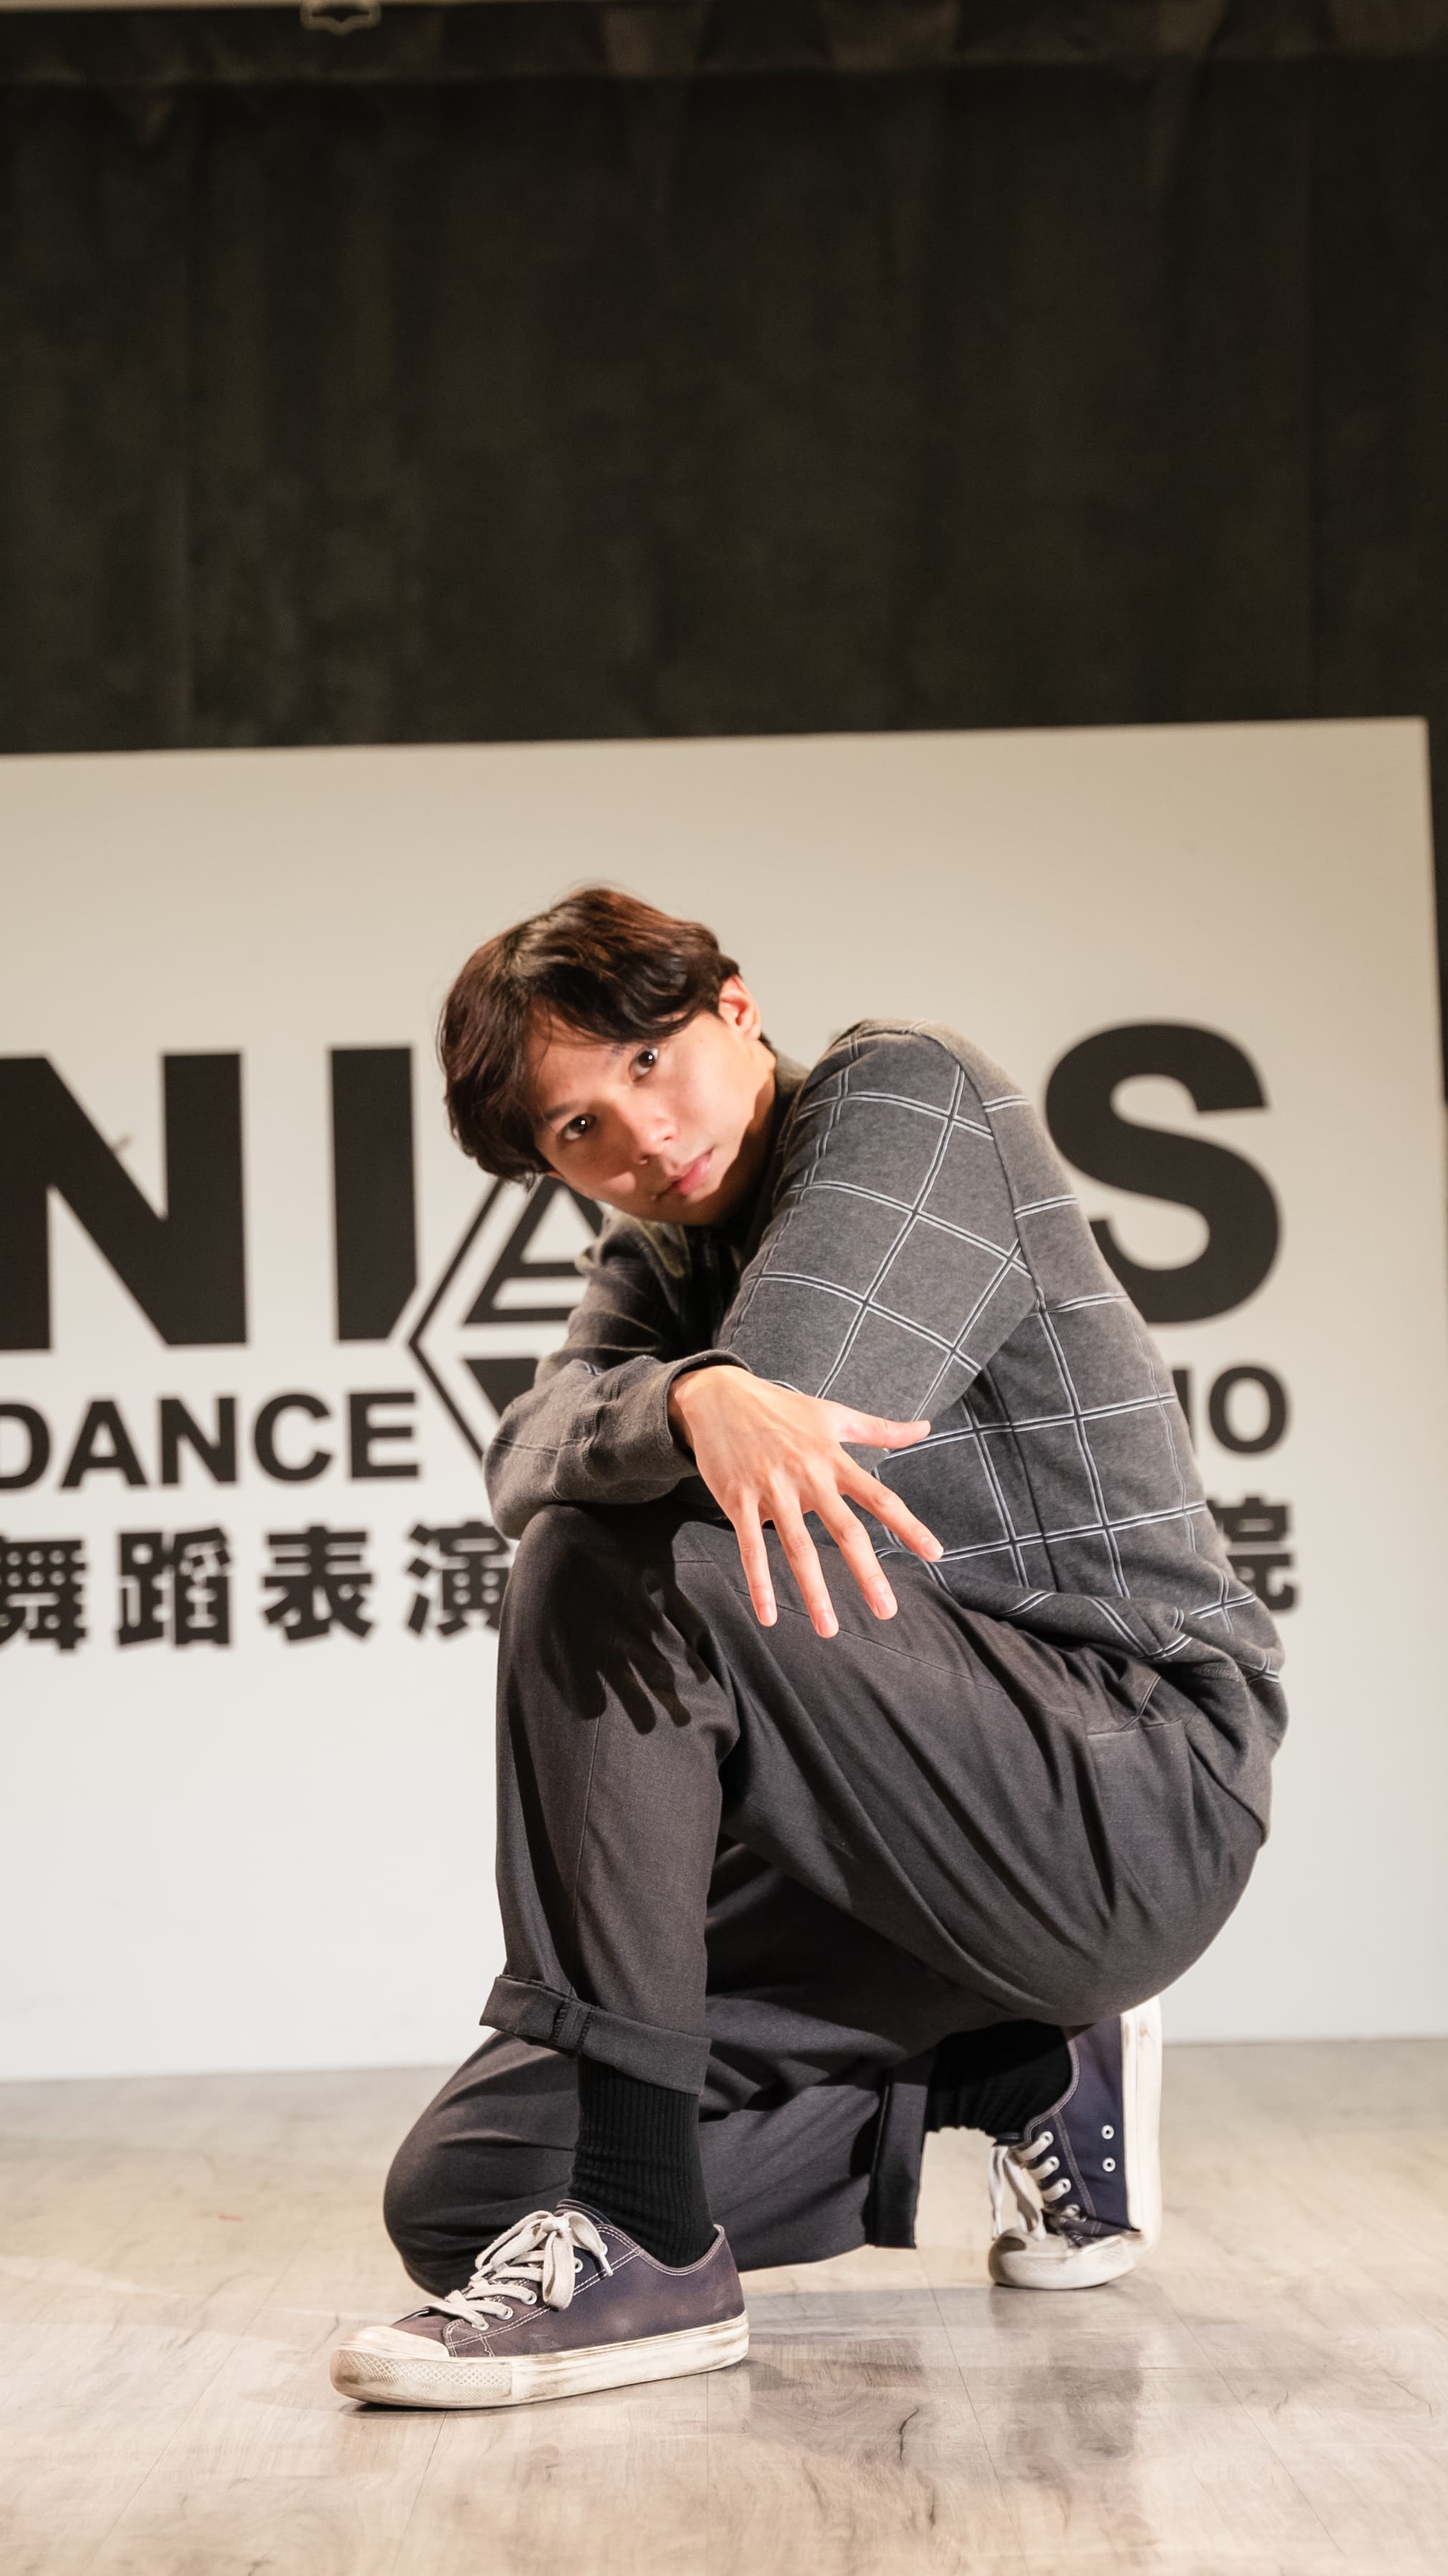 尼亞斯舞蹈表演藝術學院的師資介紹圖片